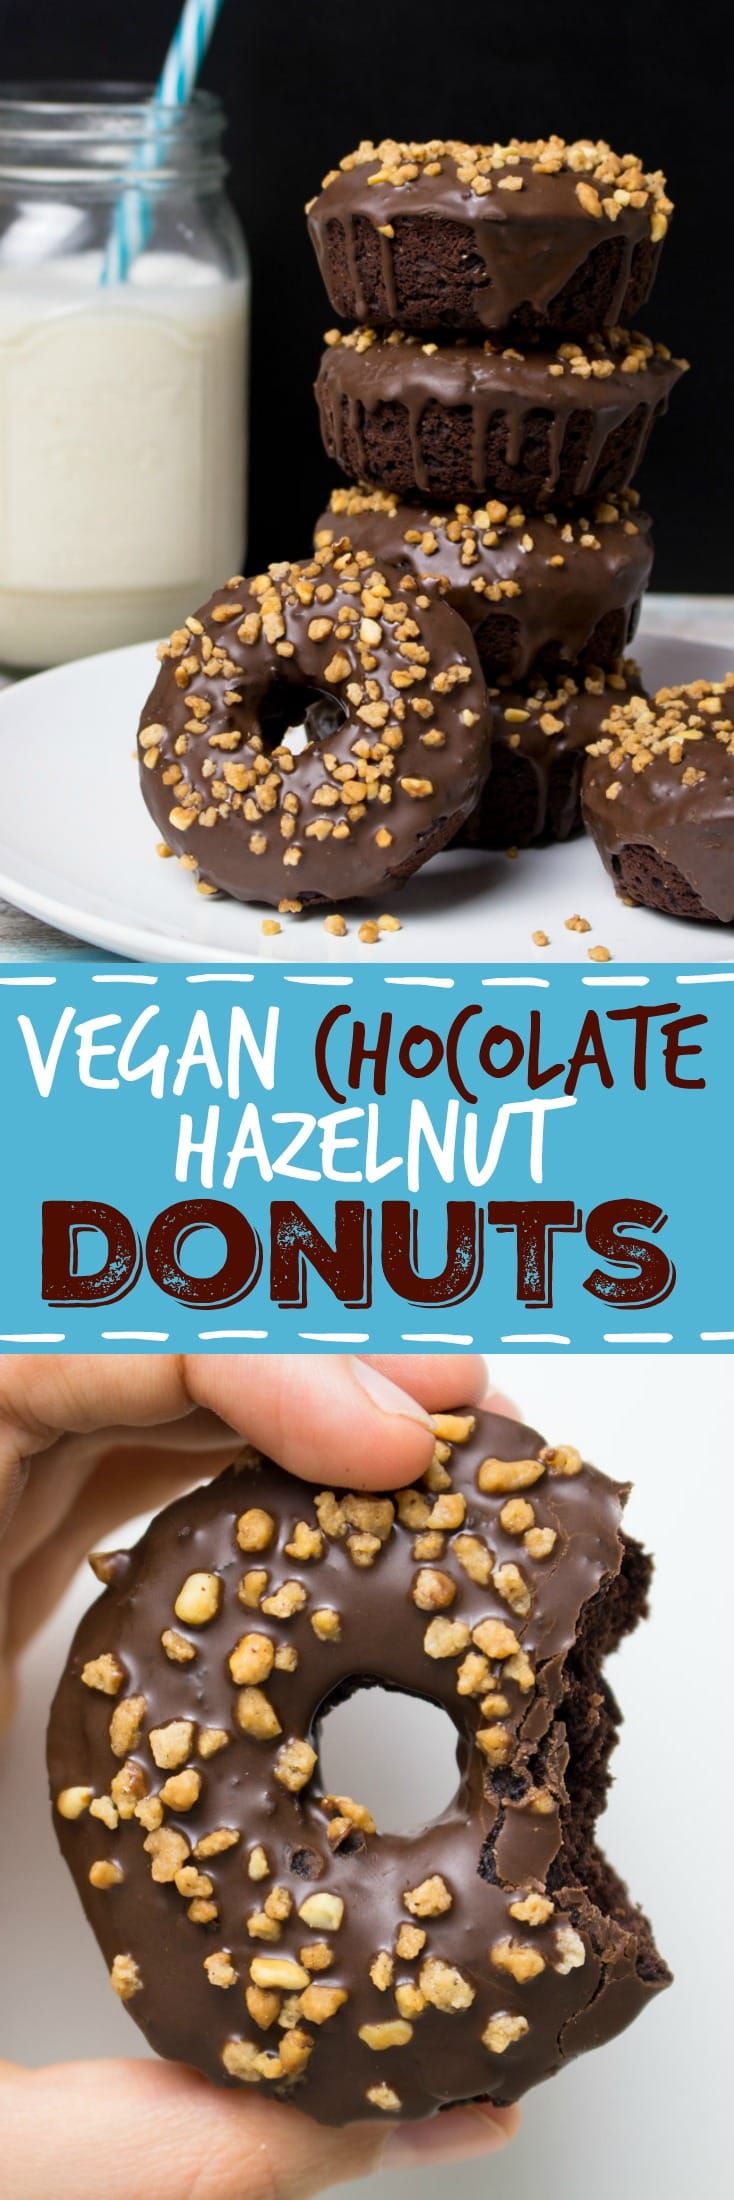 Vegan Donuts with Chocolate Glaze and Hazelnuts